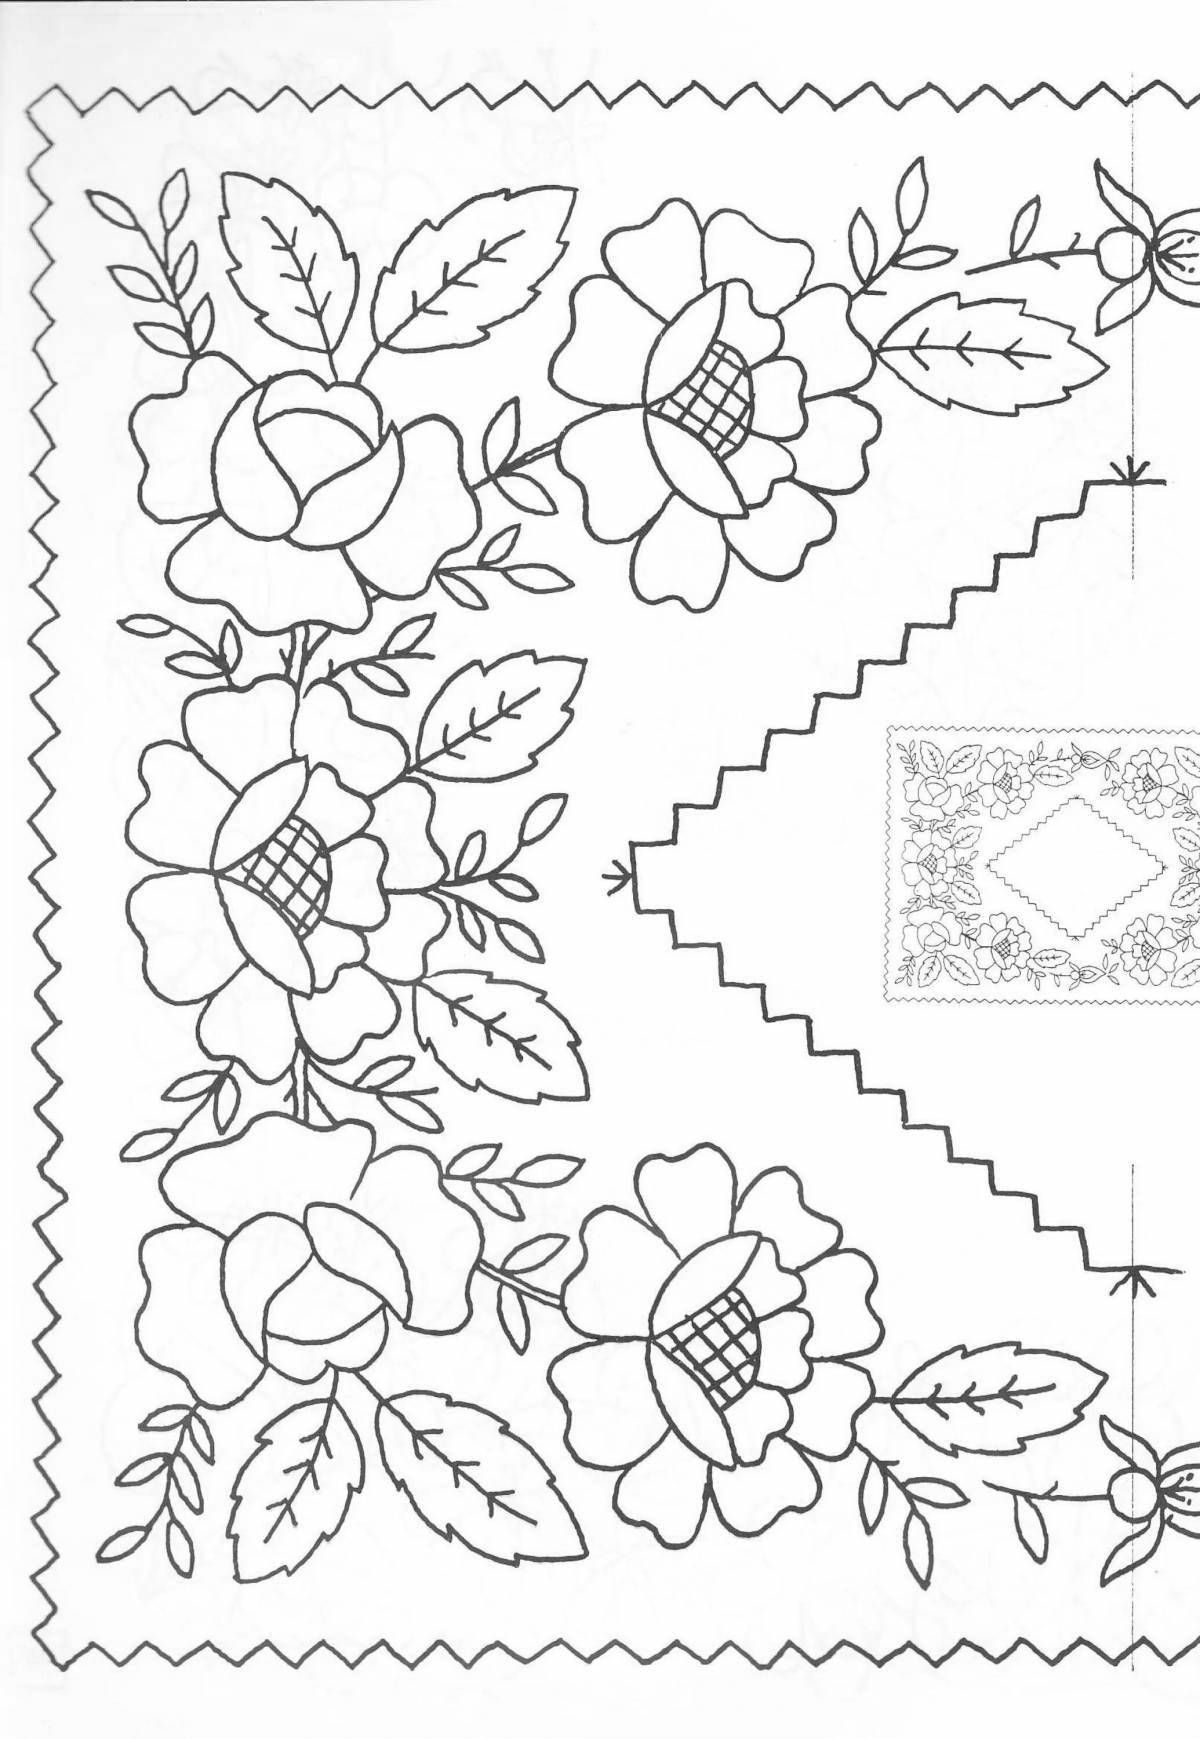 Fancy handkerchief coloring page